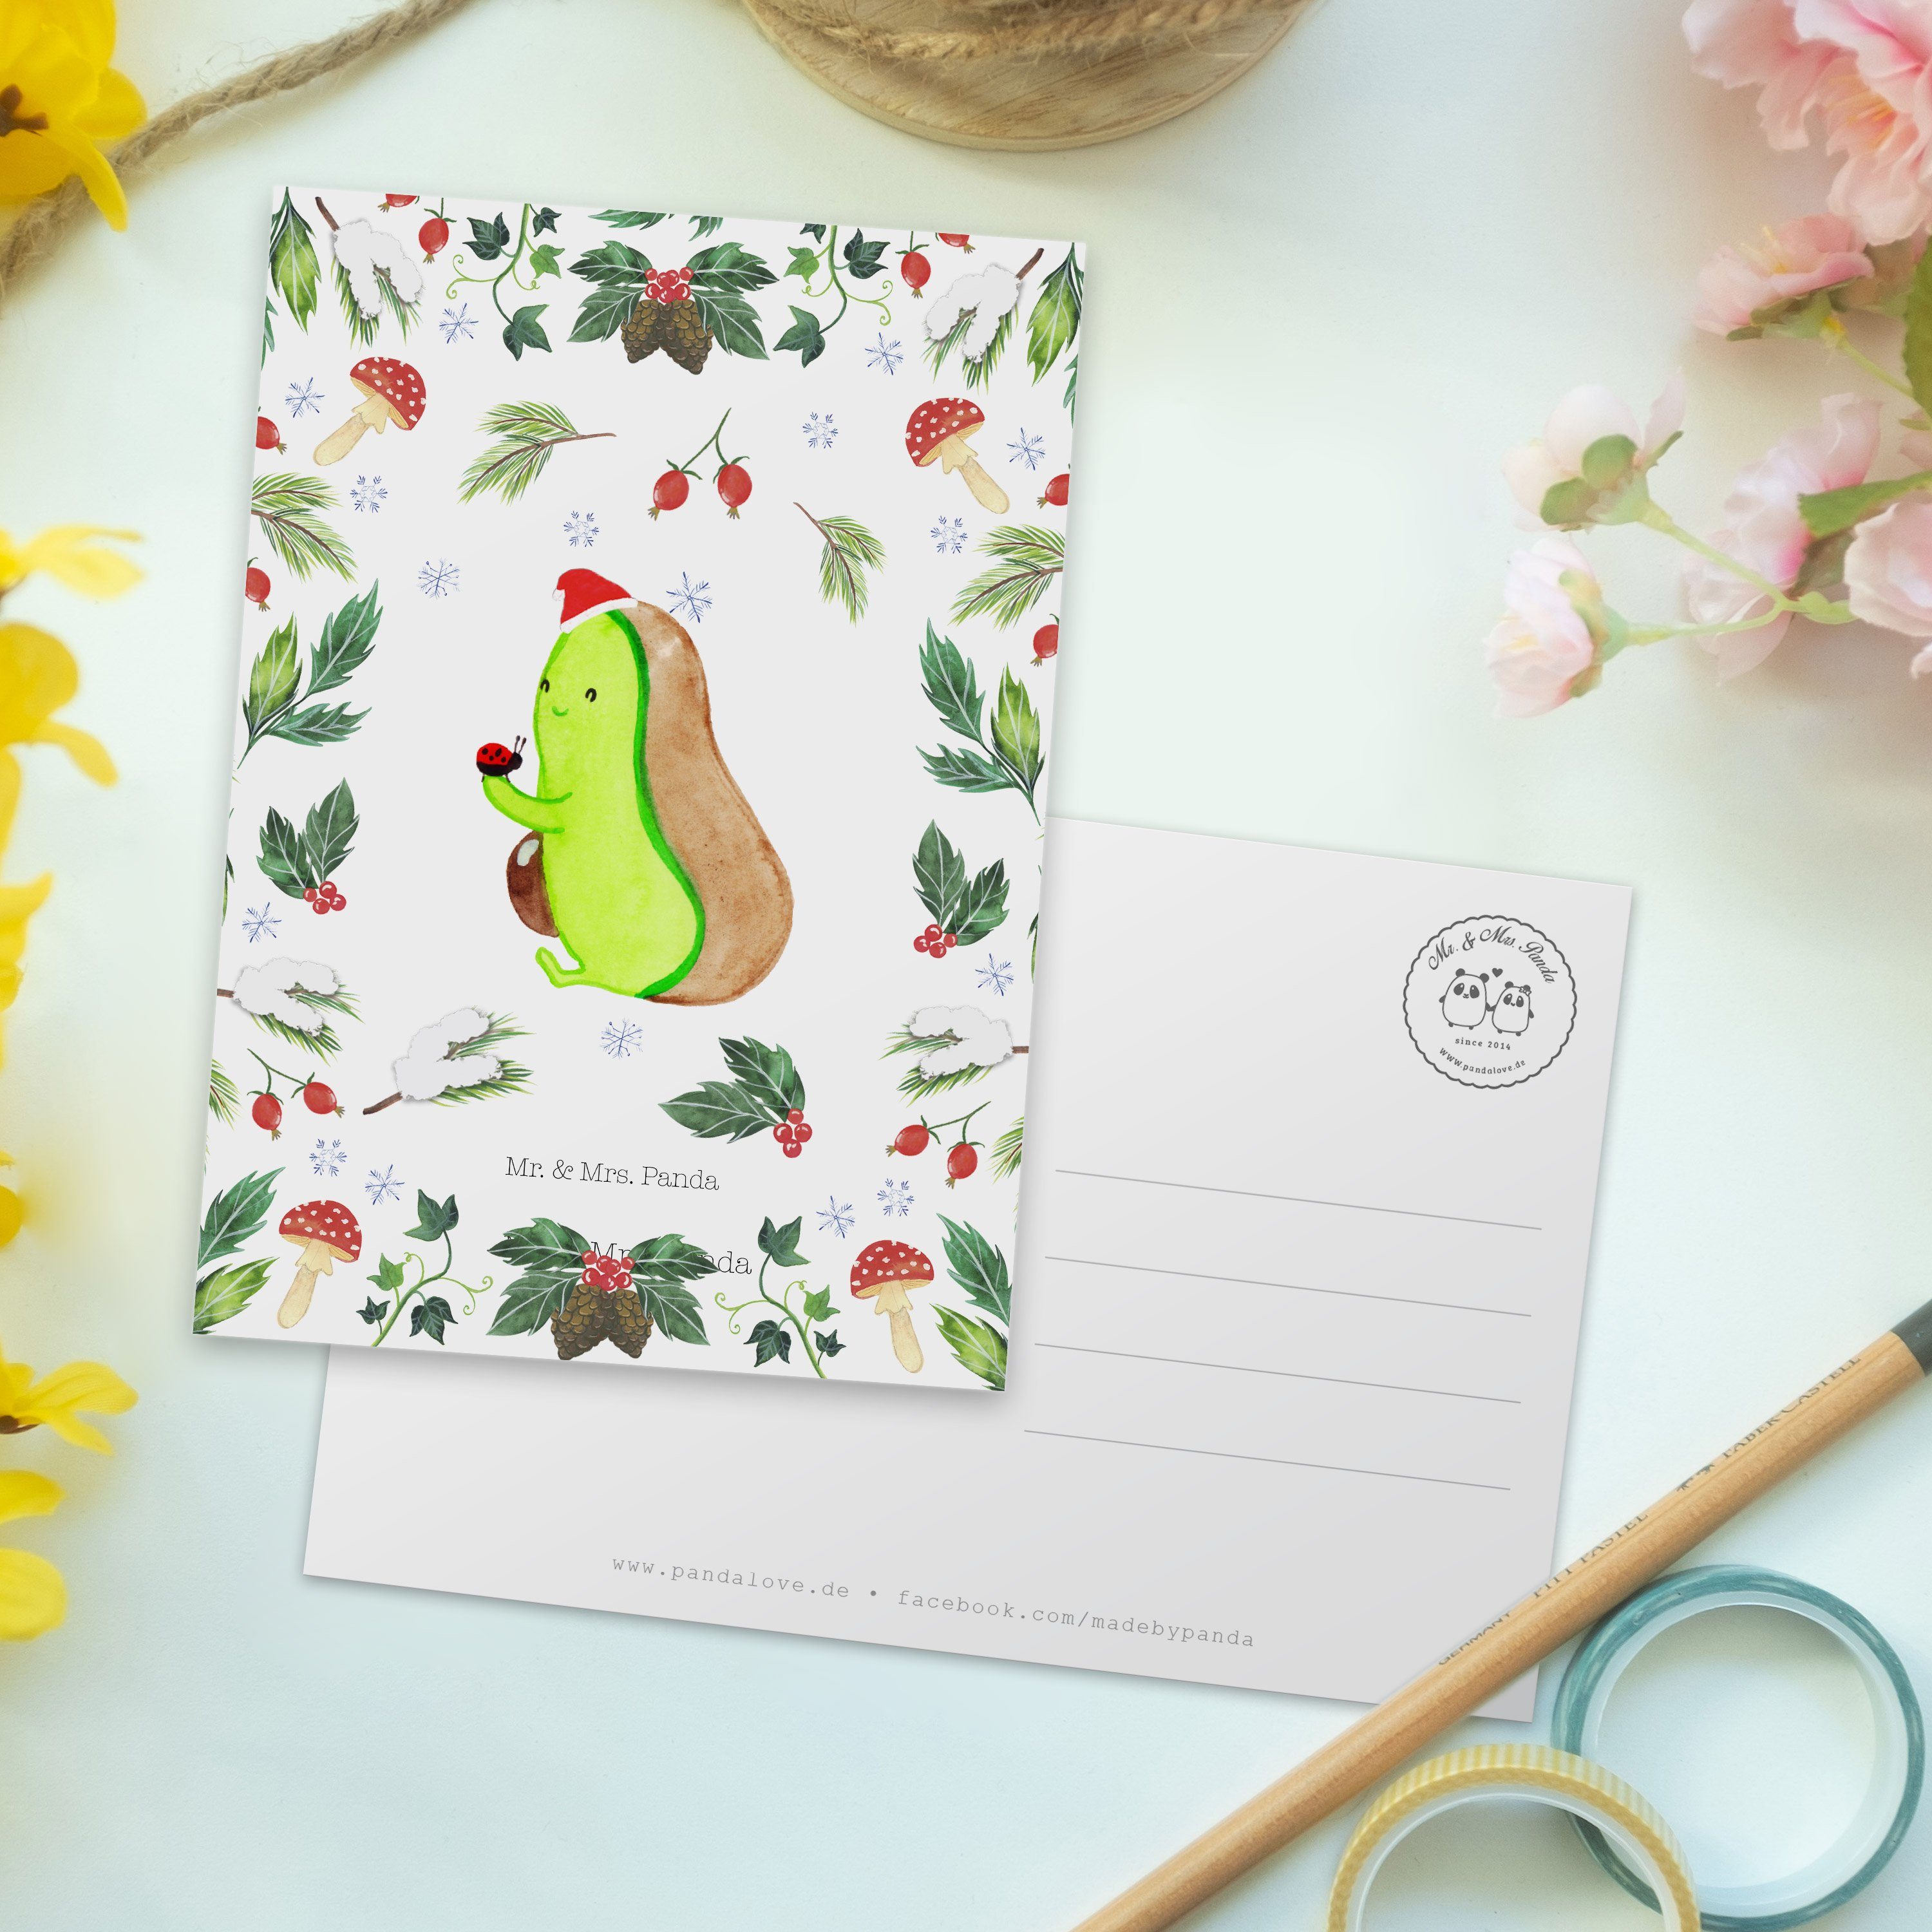 Mr. & Mrs. Geschenk, Panda Winter, Weiß Geschenkkarte - Dinge - kleine Karte, Avocado Postkarte